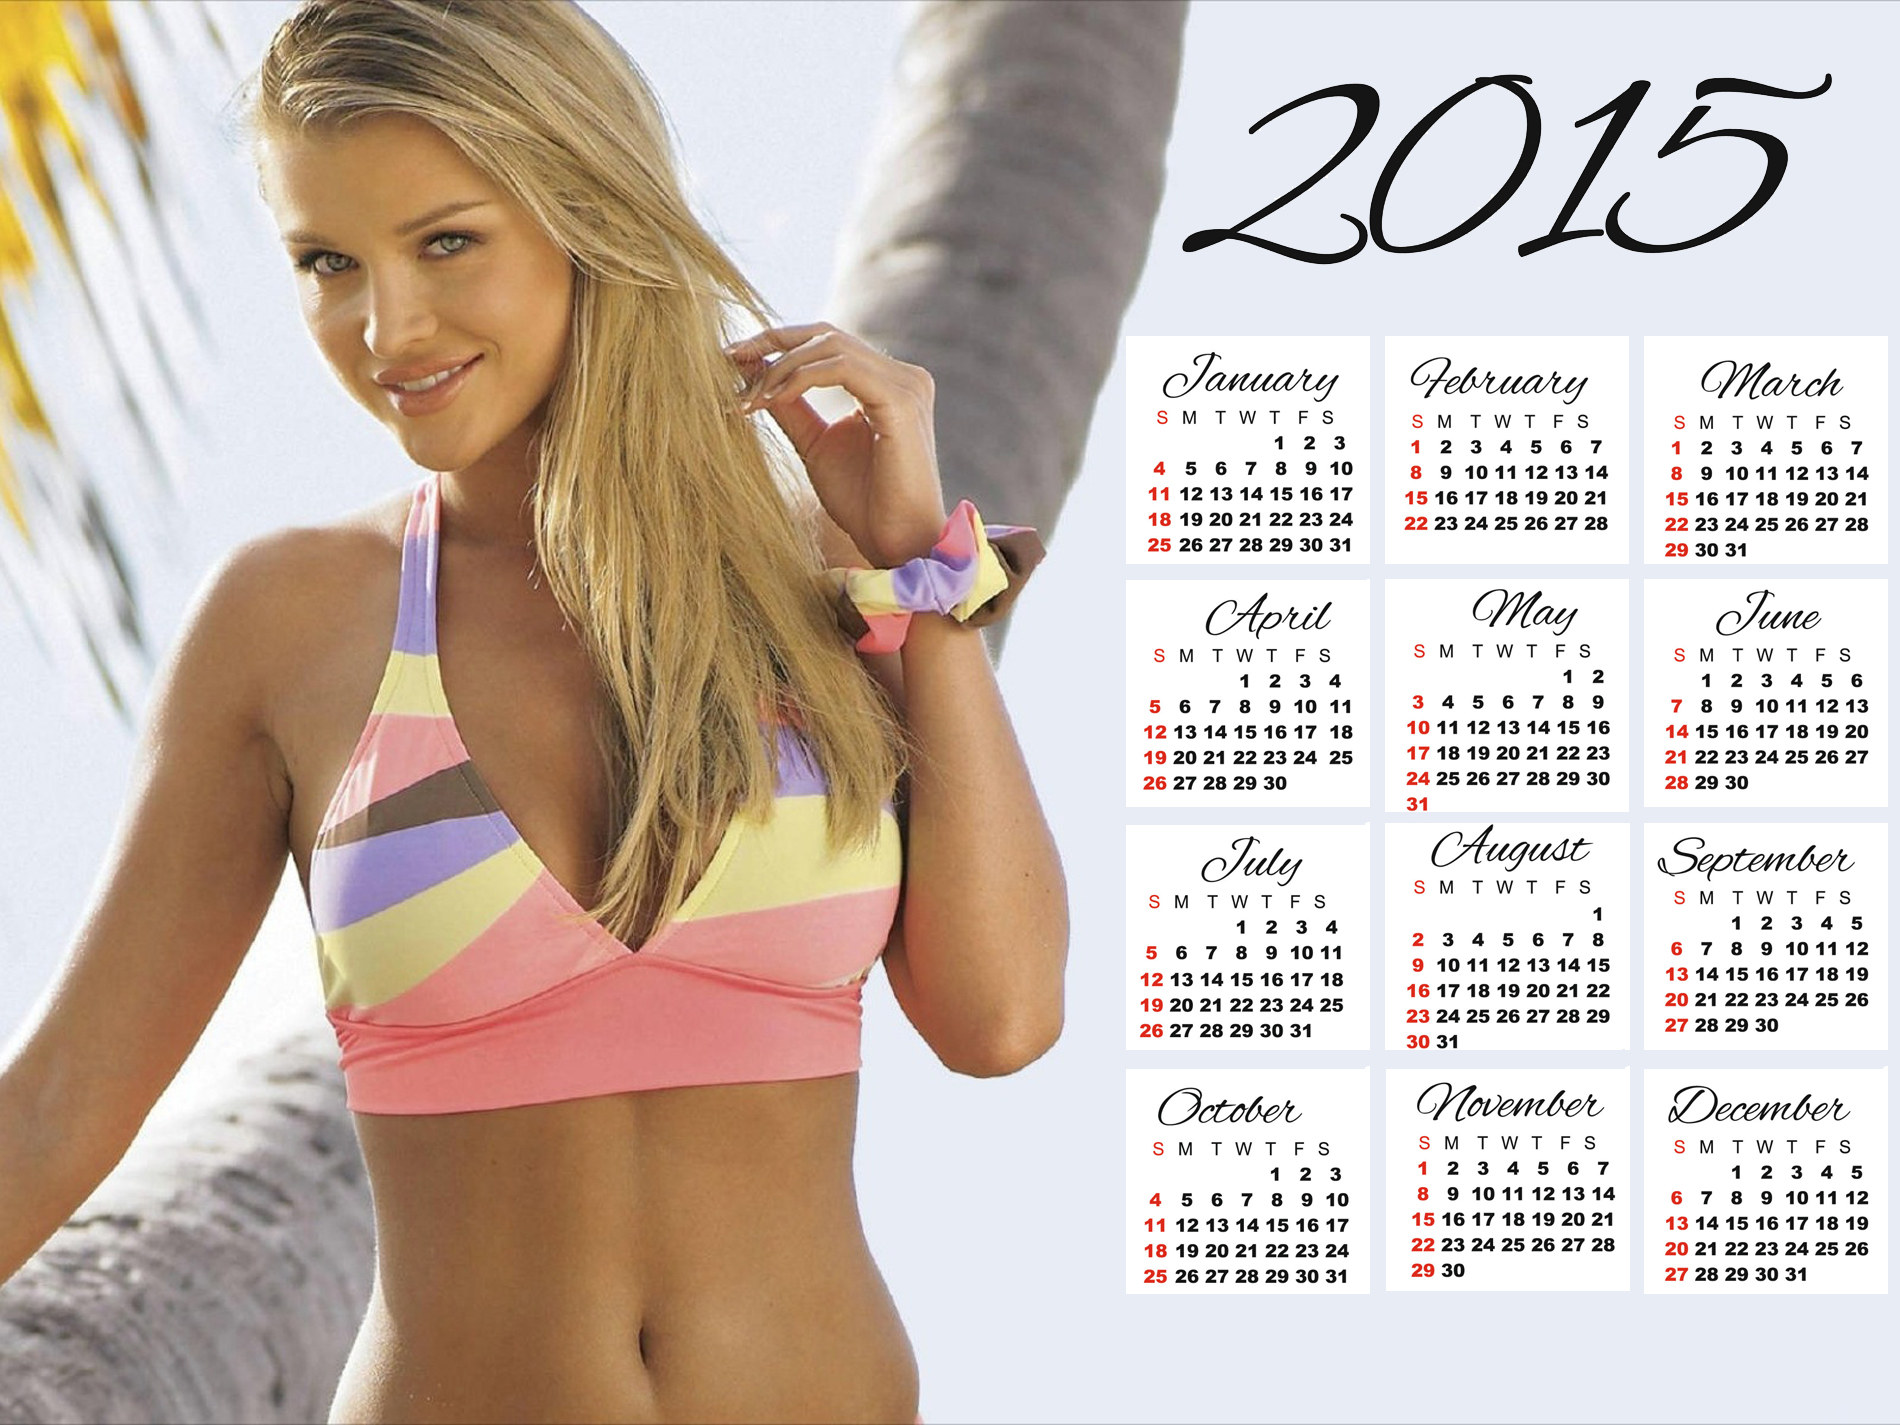 joanna krupa bikini wallpaper calendar 2015